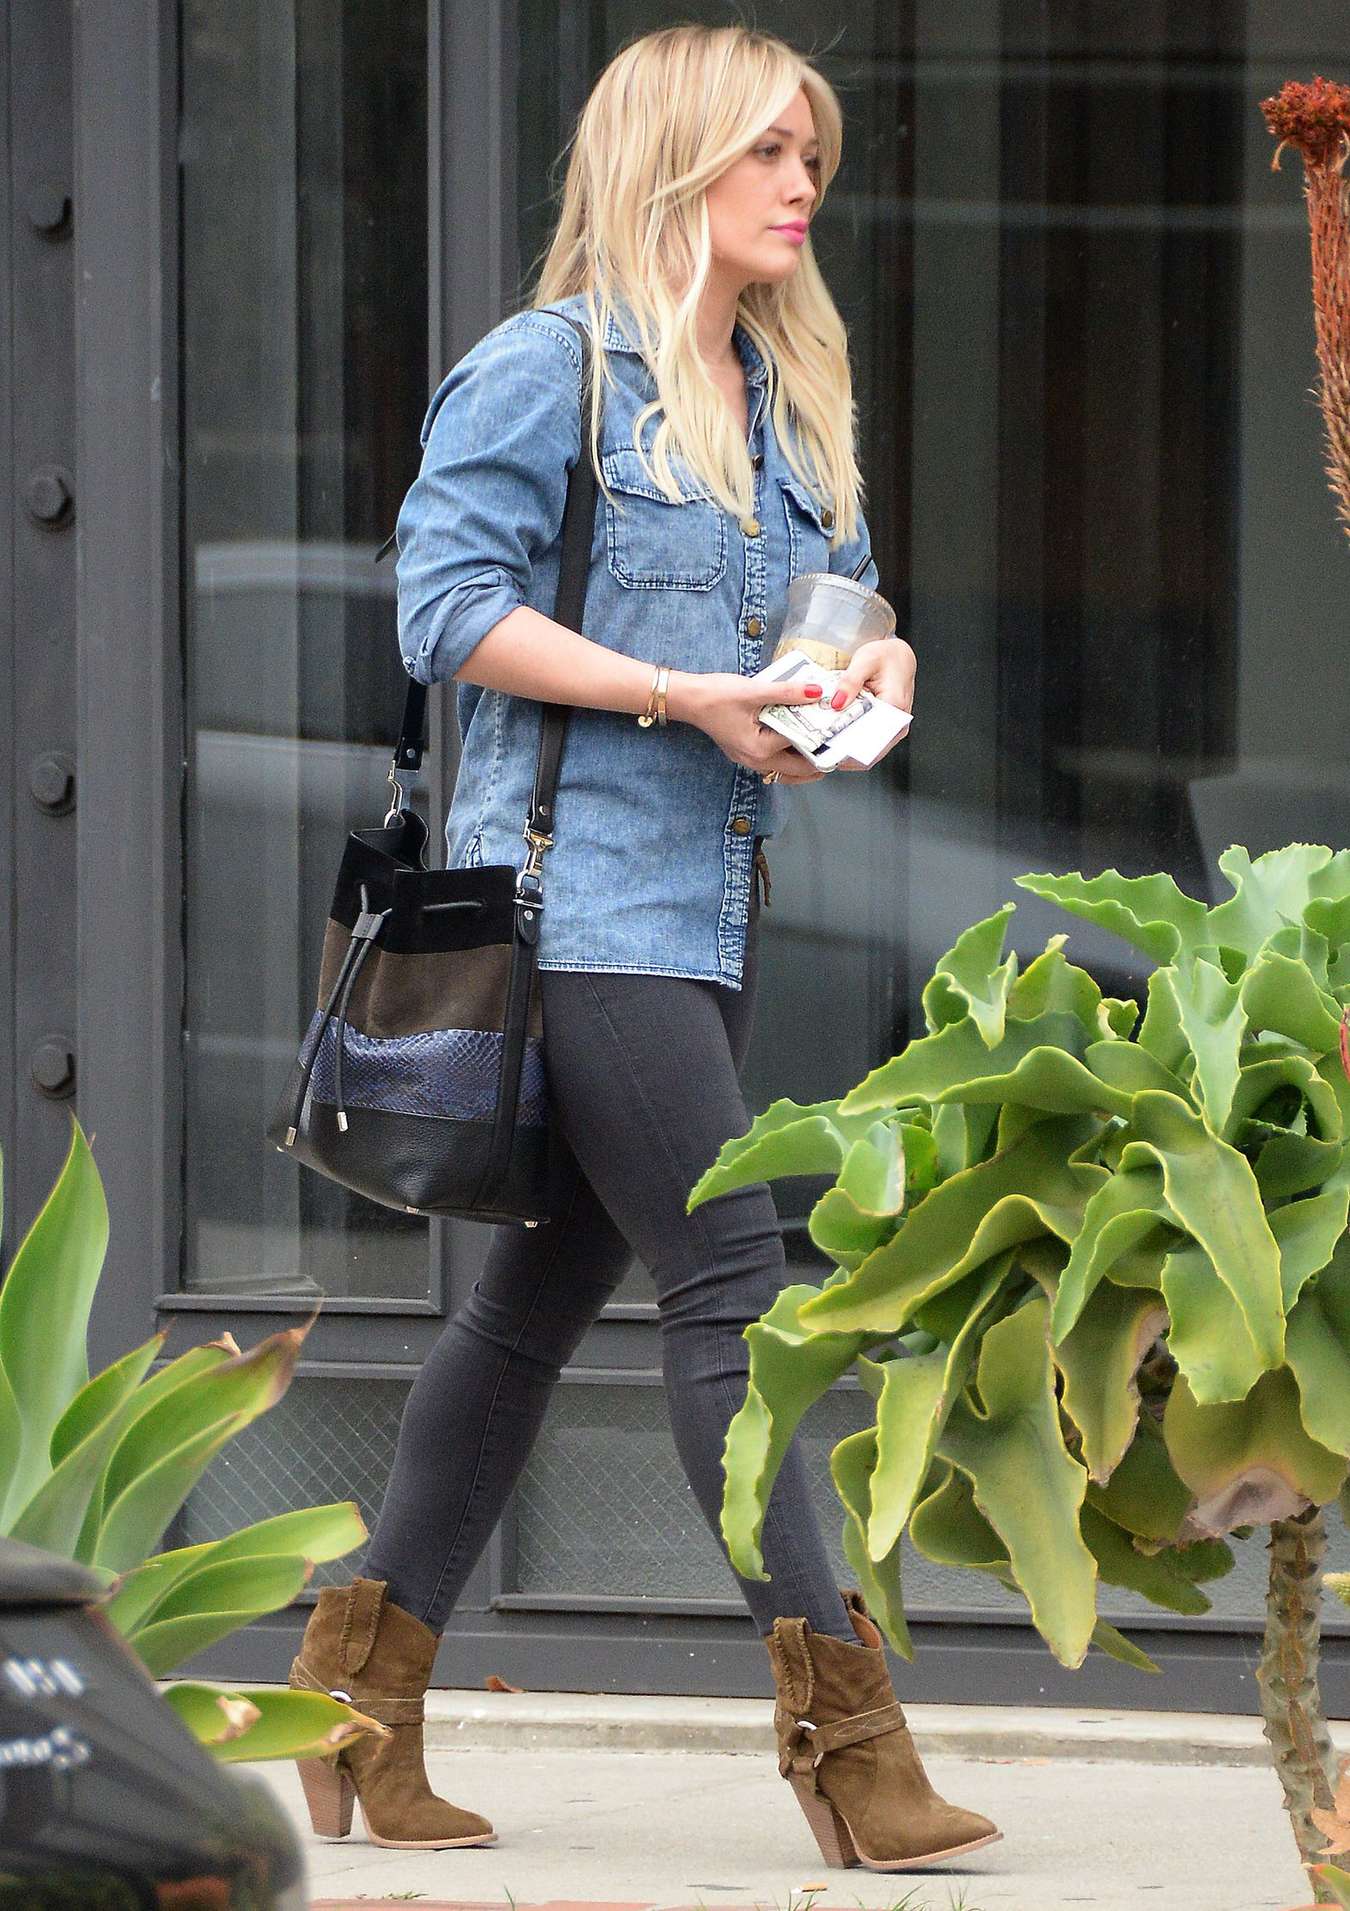 Hilary Duff 2015 : Hilary Duff in Jeans -27